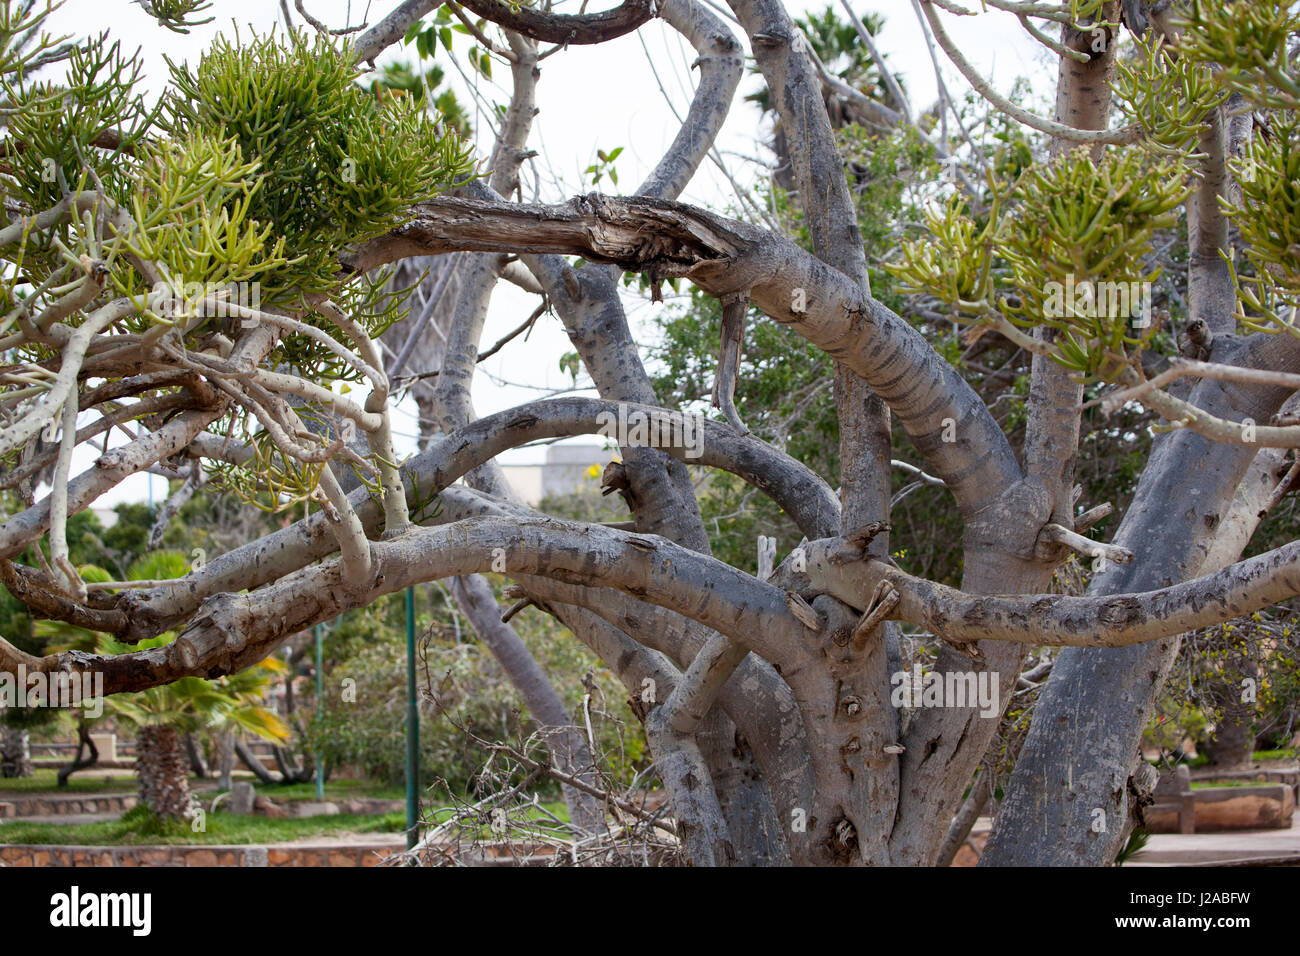 Afrika, West-Sahara, Dakhla. Eine verknotete Baum in einem Park. Stockfoto